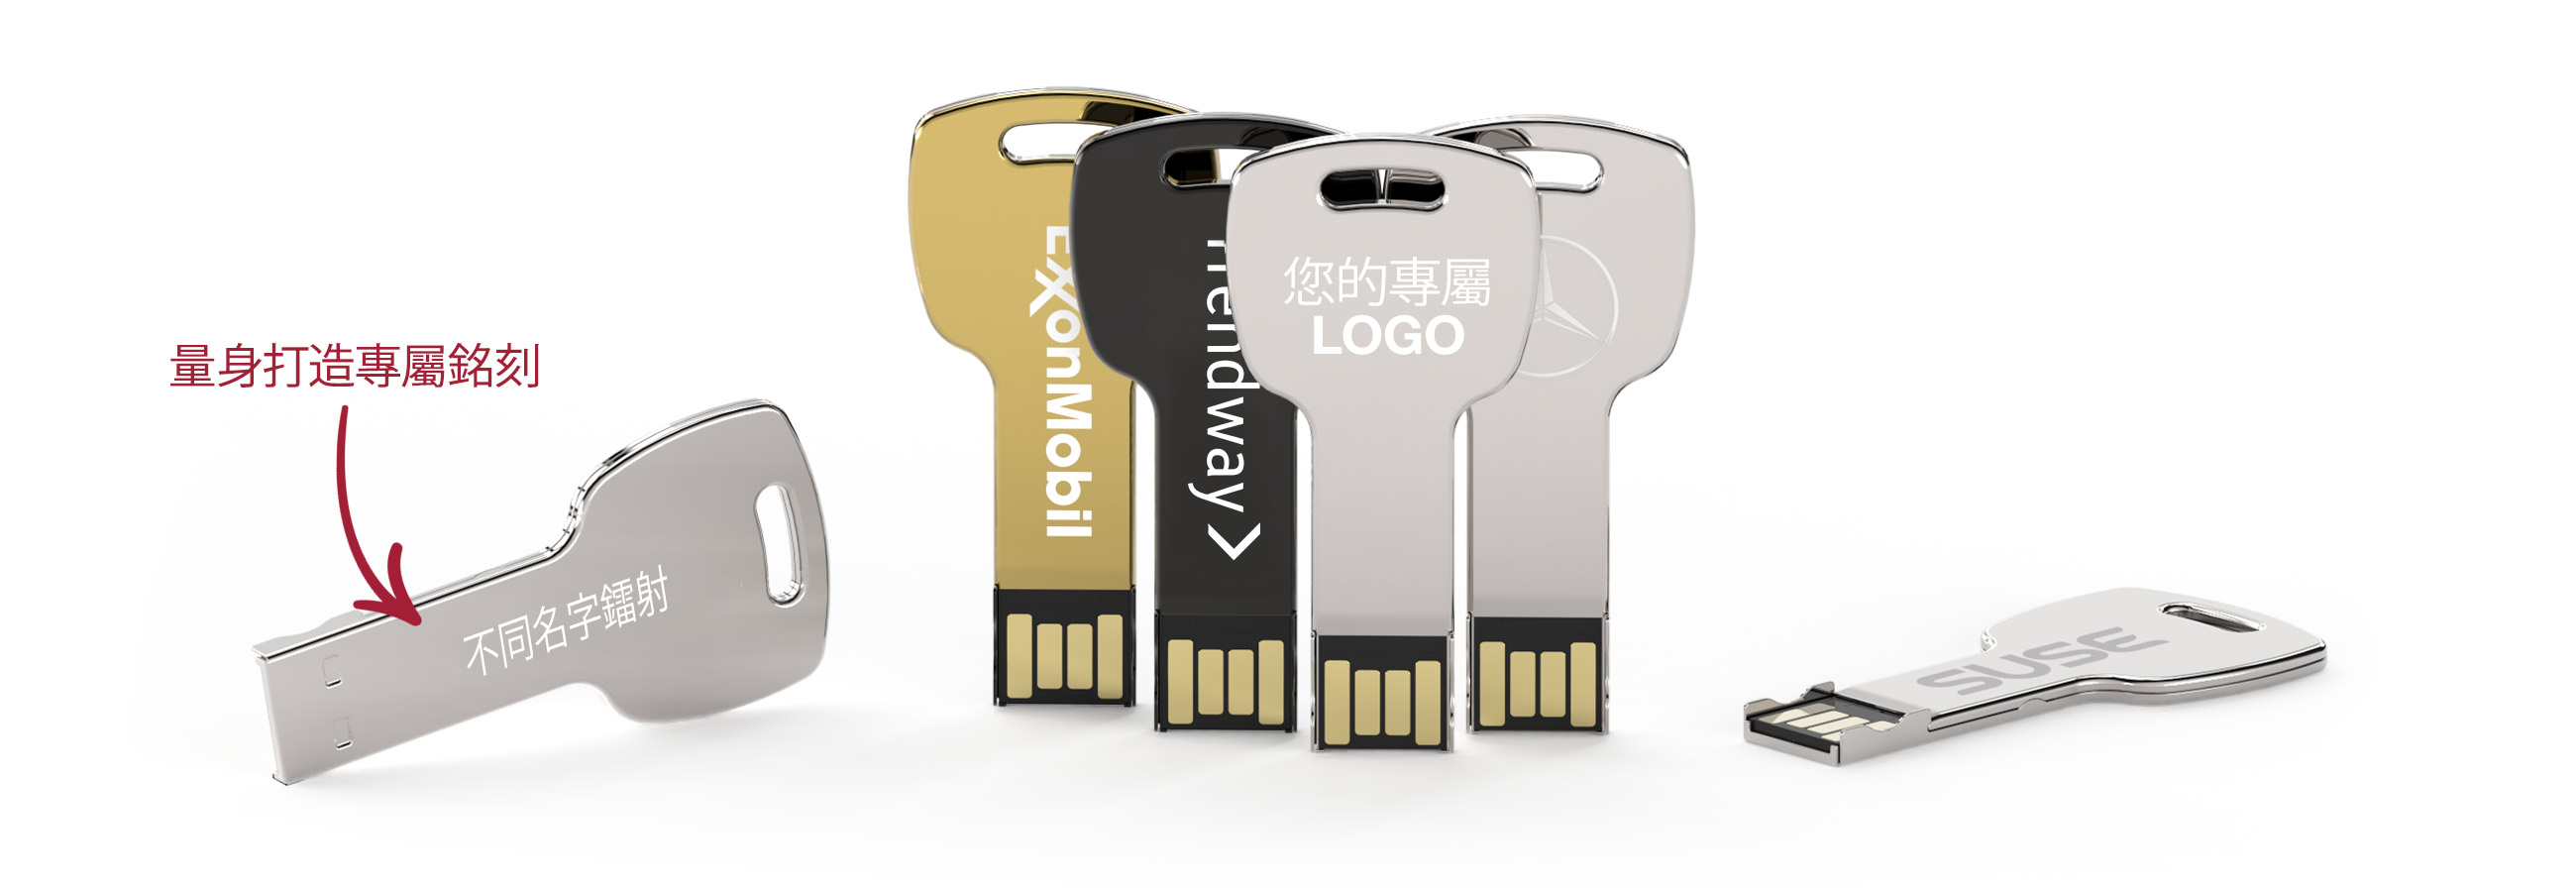 Key USB隨身行動碟